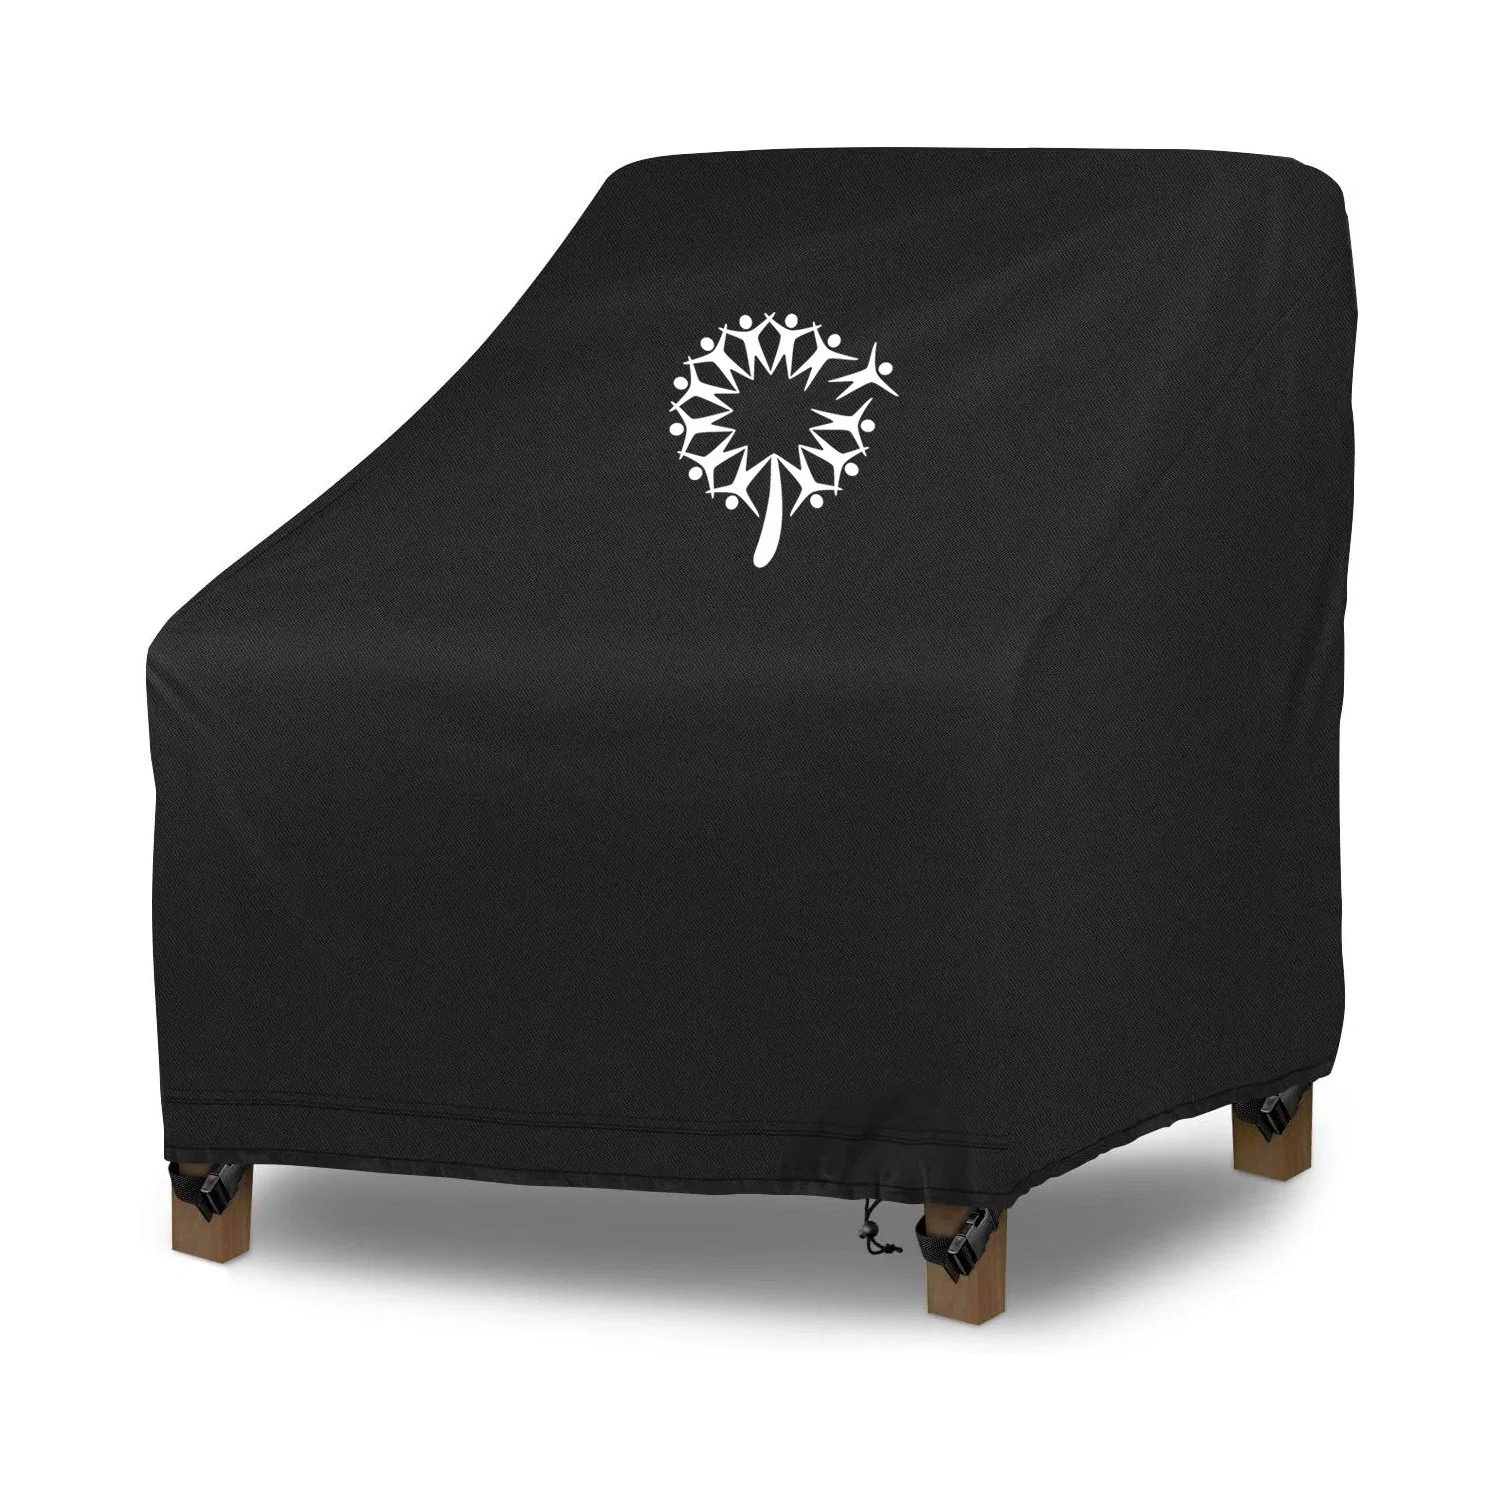 Impermeable al aire libre muebles silla resistente al UV de la cubierta de césped de Patio cubiertas silla